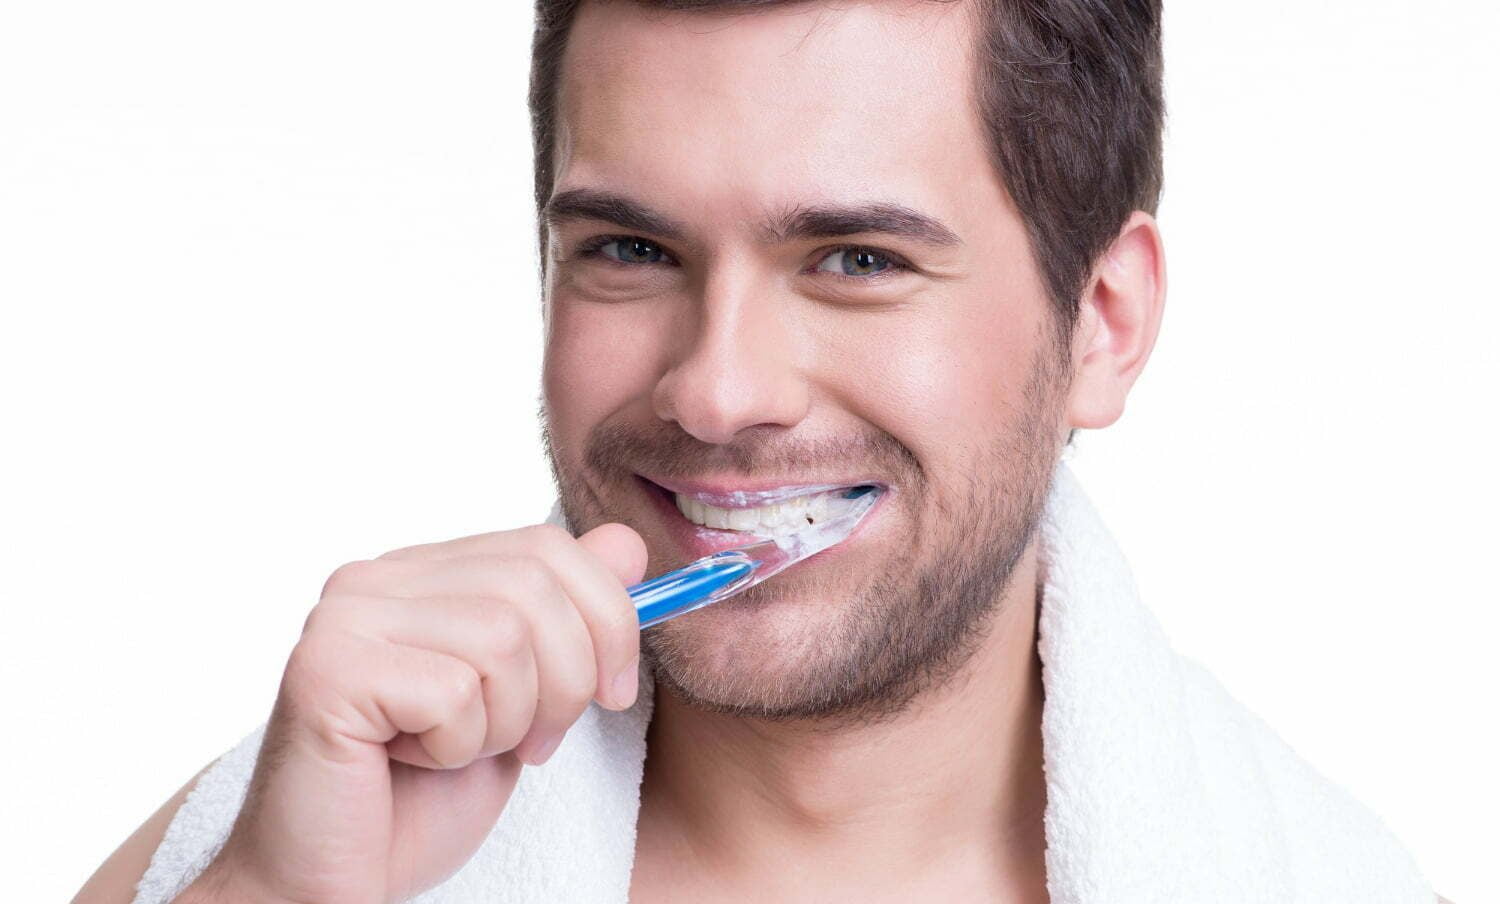 cepillarte los dientes